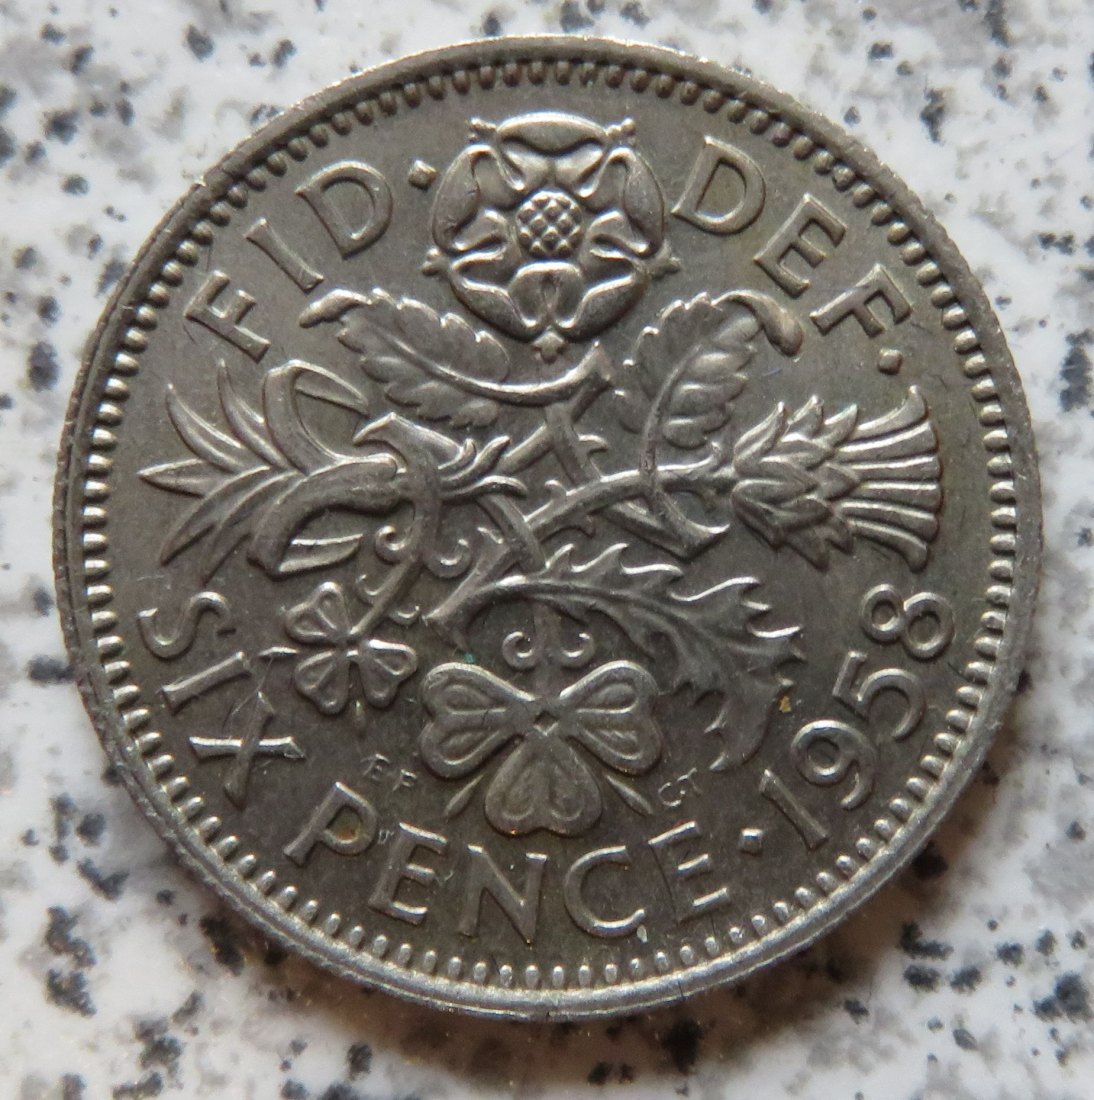  Großbritannien 6 Pence 1958, funz/unz   